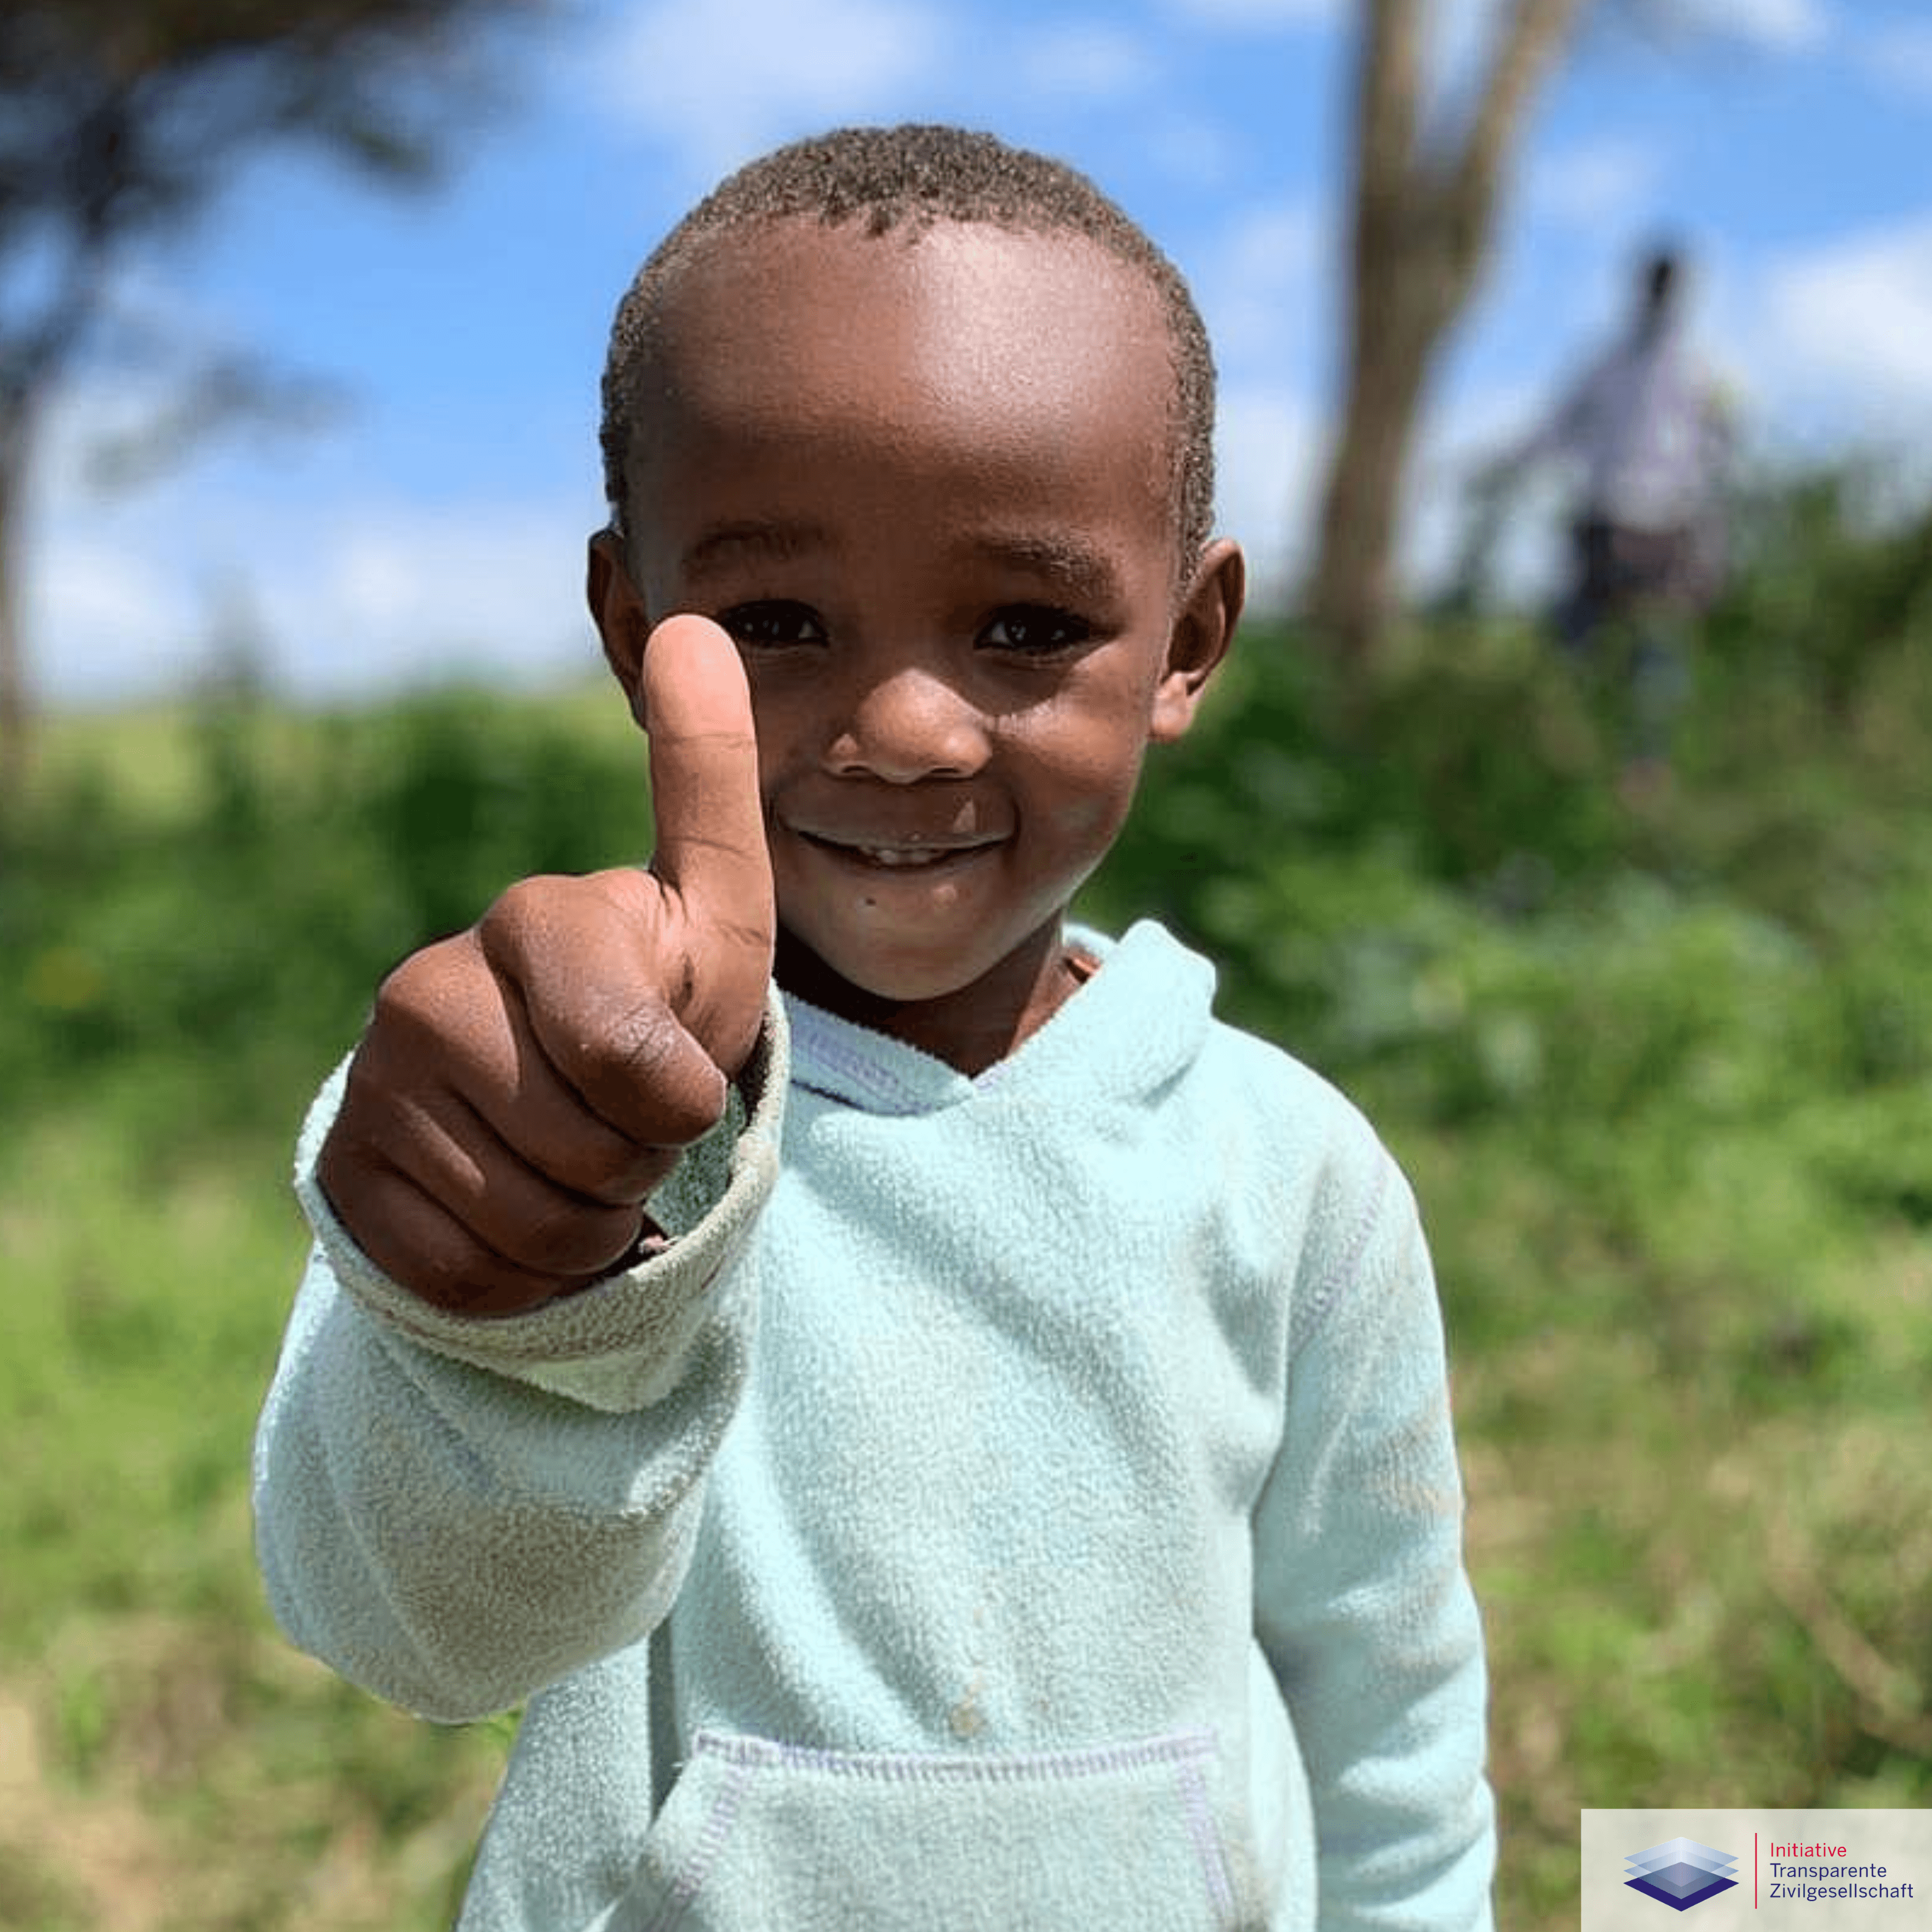 Waisenkind in Afrika zeigt den Daumen hoch für die Spende